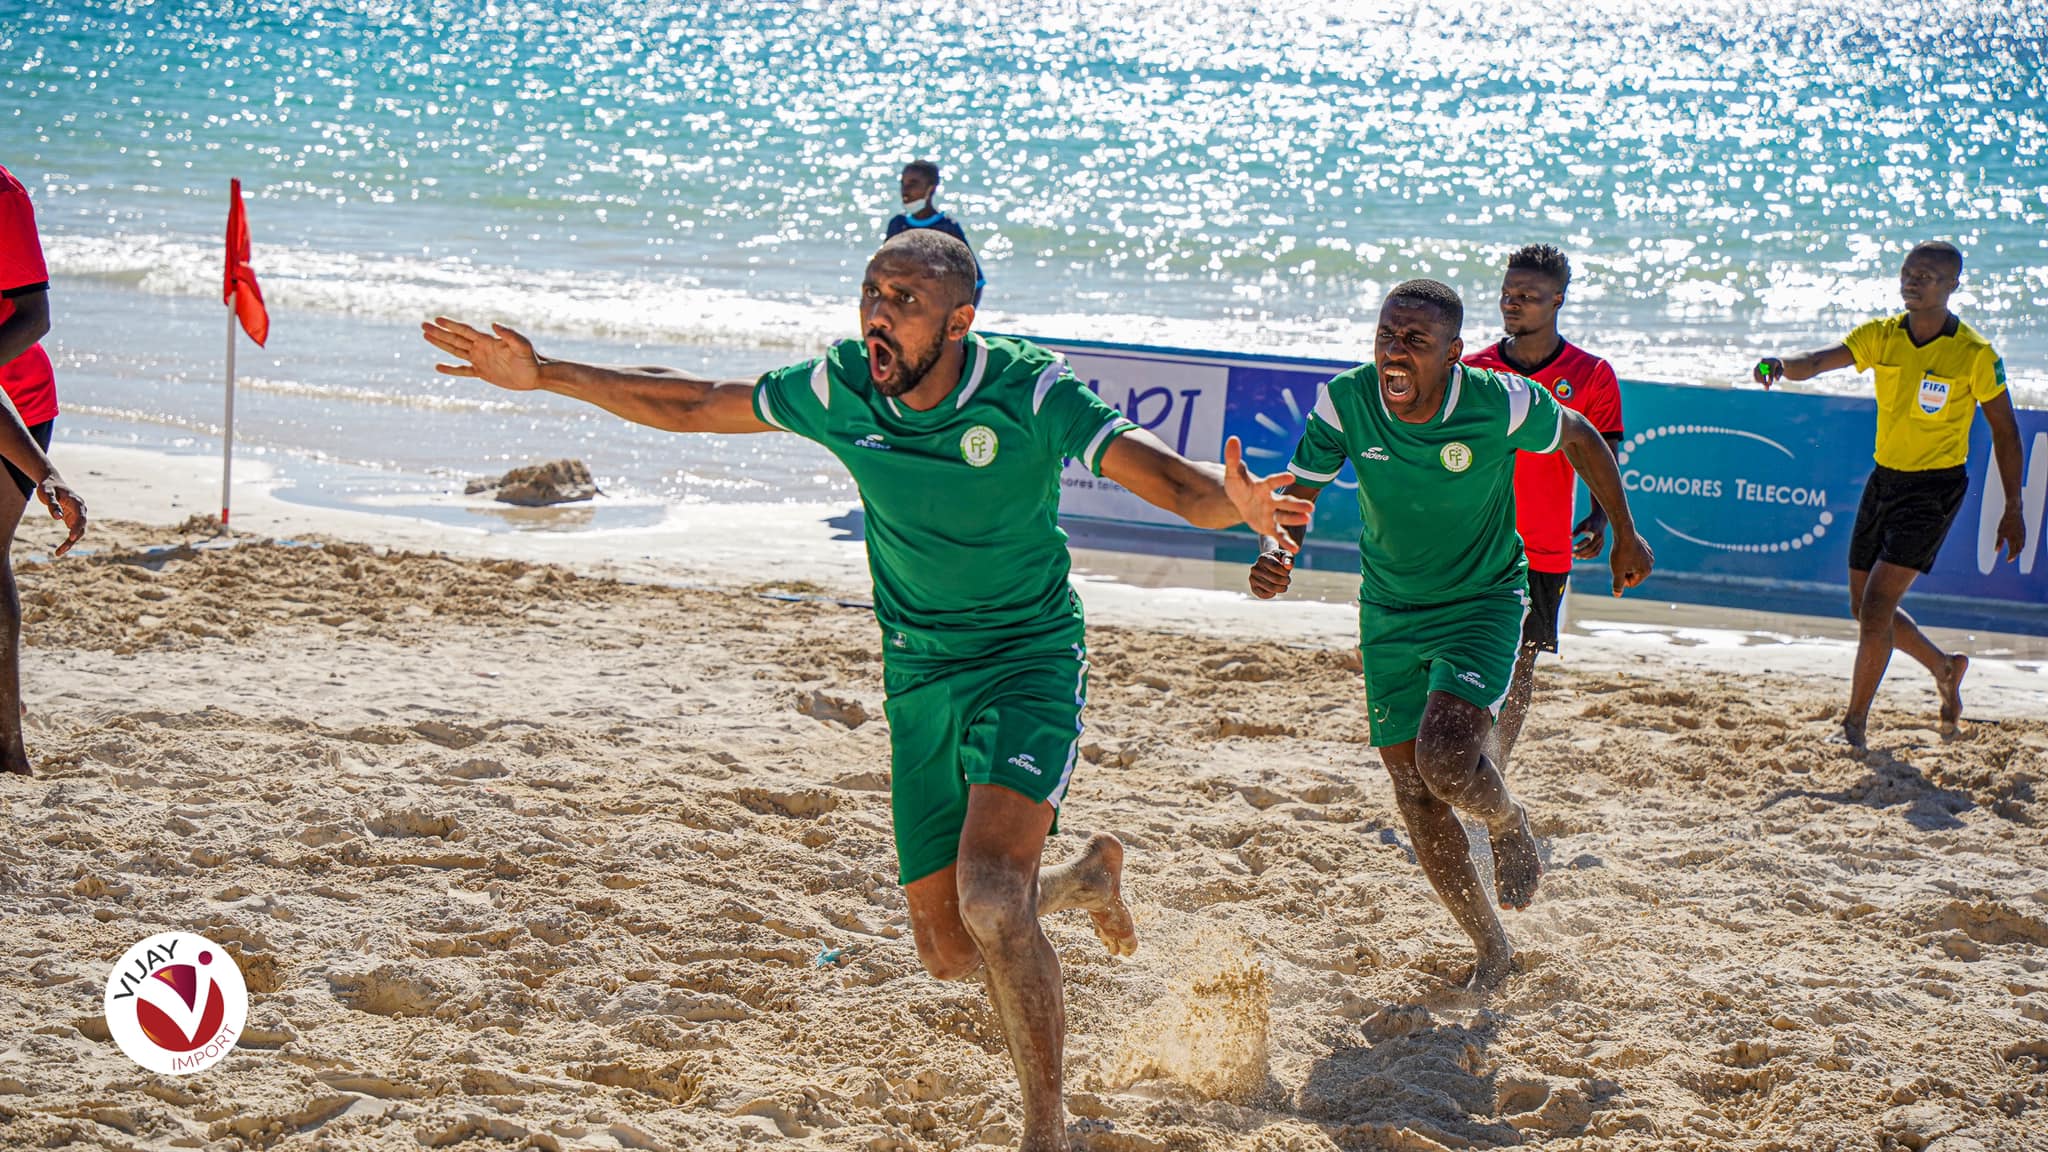 Cœlacanthes, Cœlacanthes Beach Soccer : une première pleine de promesses, Comoros Football 269 | Portail du football des Comores